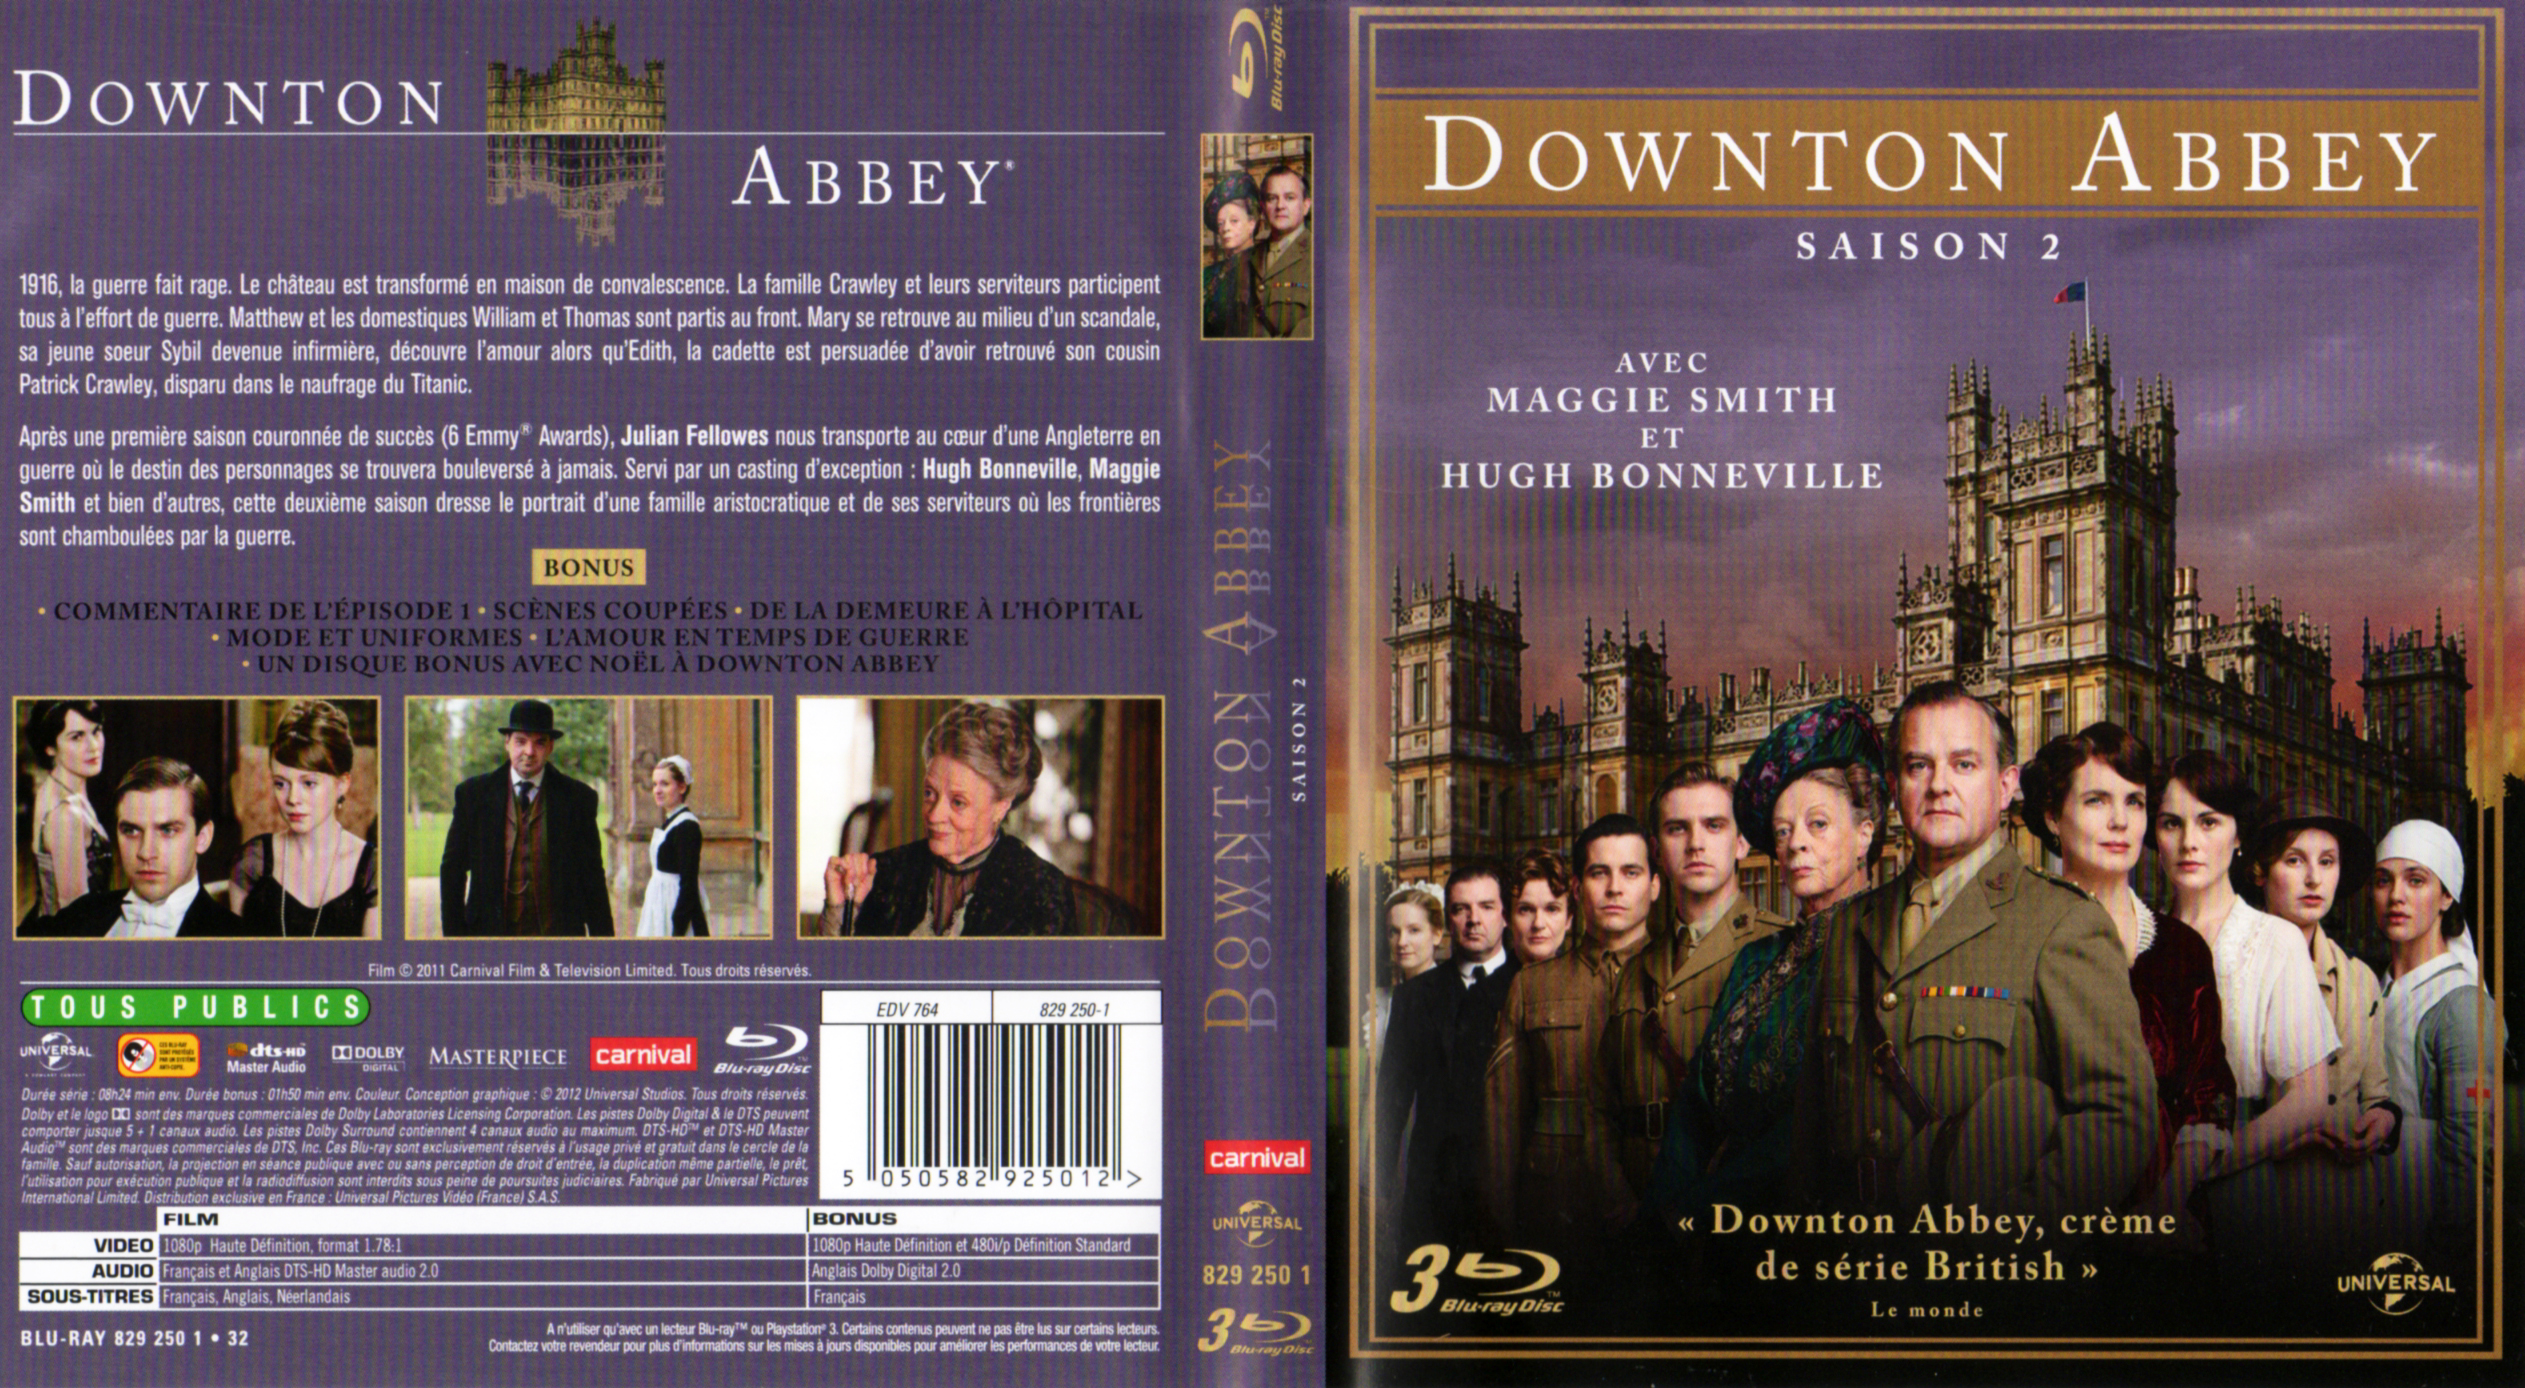 Jaquette DVD Downton Abbey Saison 2 (BLU-RAY)